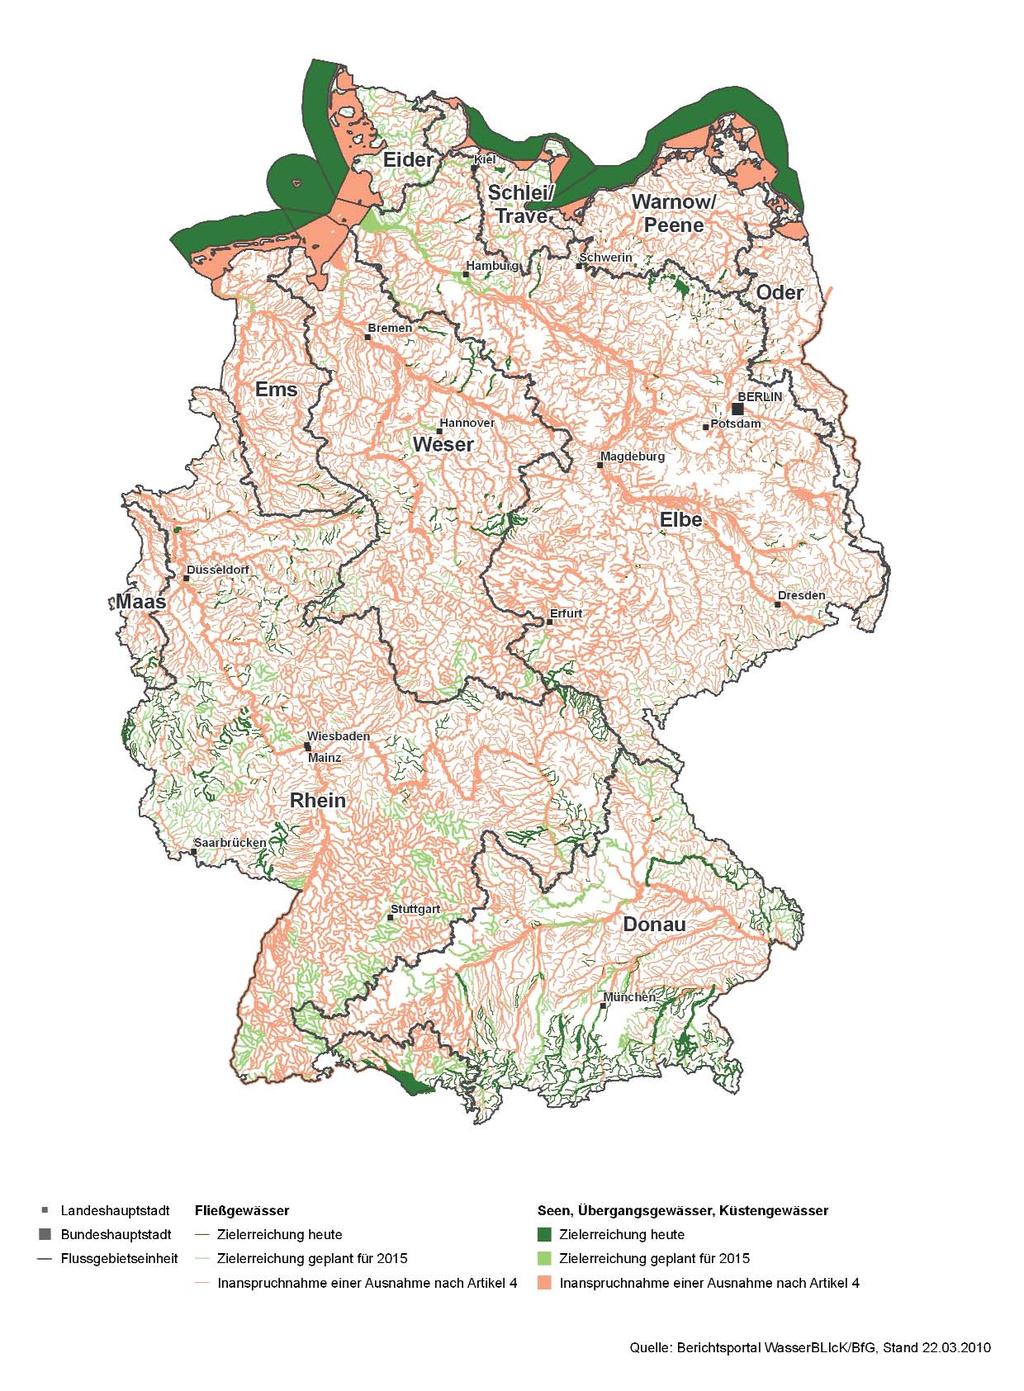 5.1 Ausnahmen in Deutschland Innerhalb des ersten Bewirtschaftungszyklus werden für 82% aller Oberflächenwasserkörper Ausnahmen in Anspruch genommen (Karte 8, Abbildung 18).